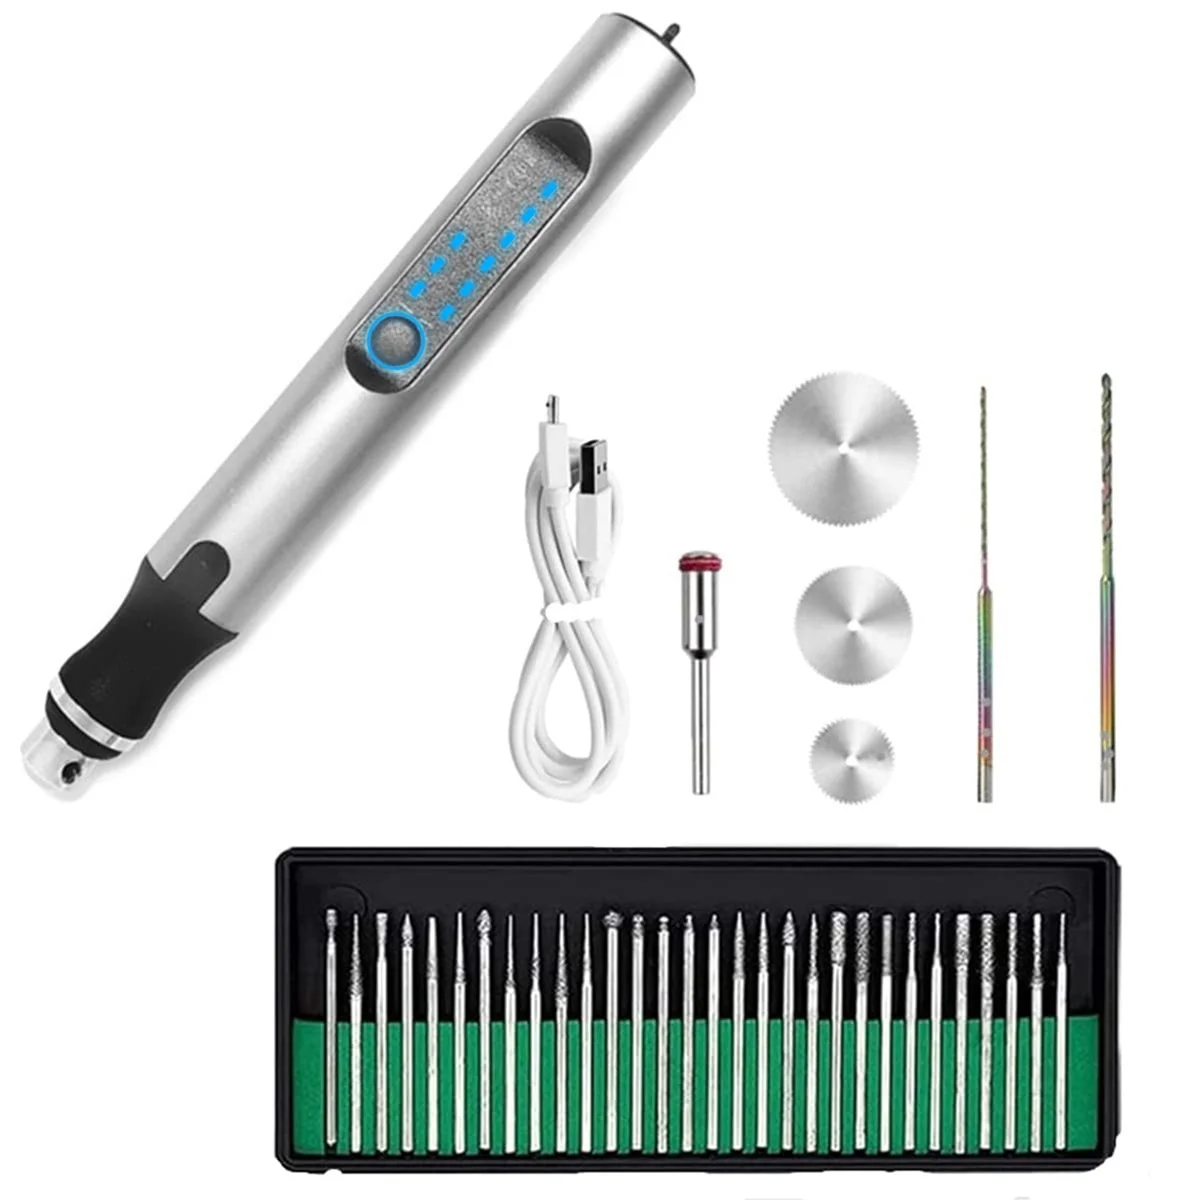 

Электрическая гравировальная ручка, набор инструментов для гравировки, USB перезаряжаемая гравировальная ручка для резьбы по стеклу, дереву, металлу, камню, пластику